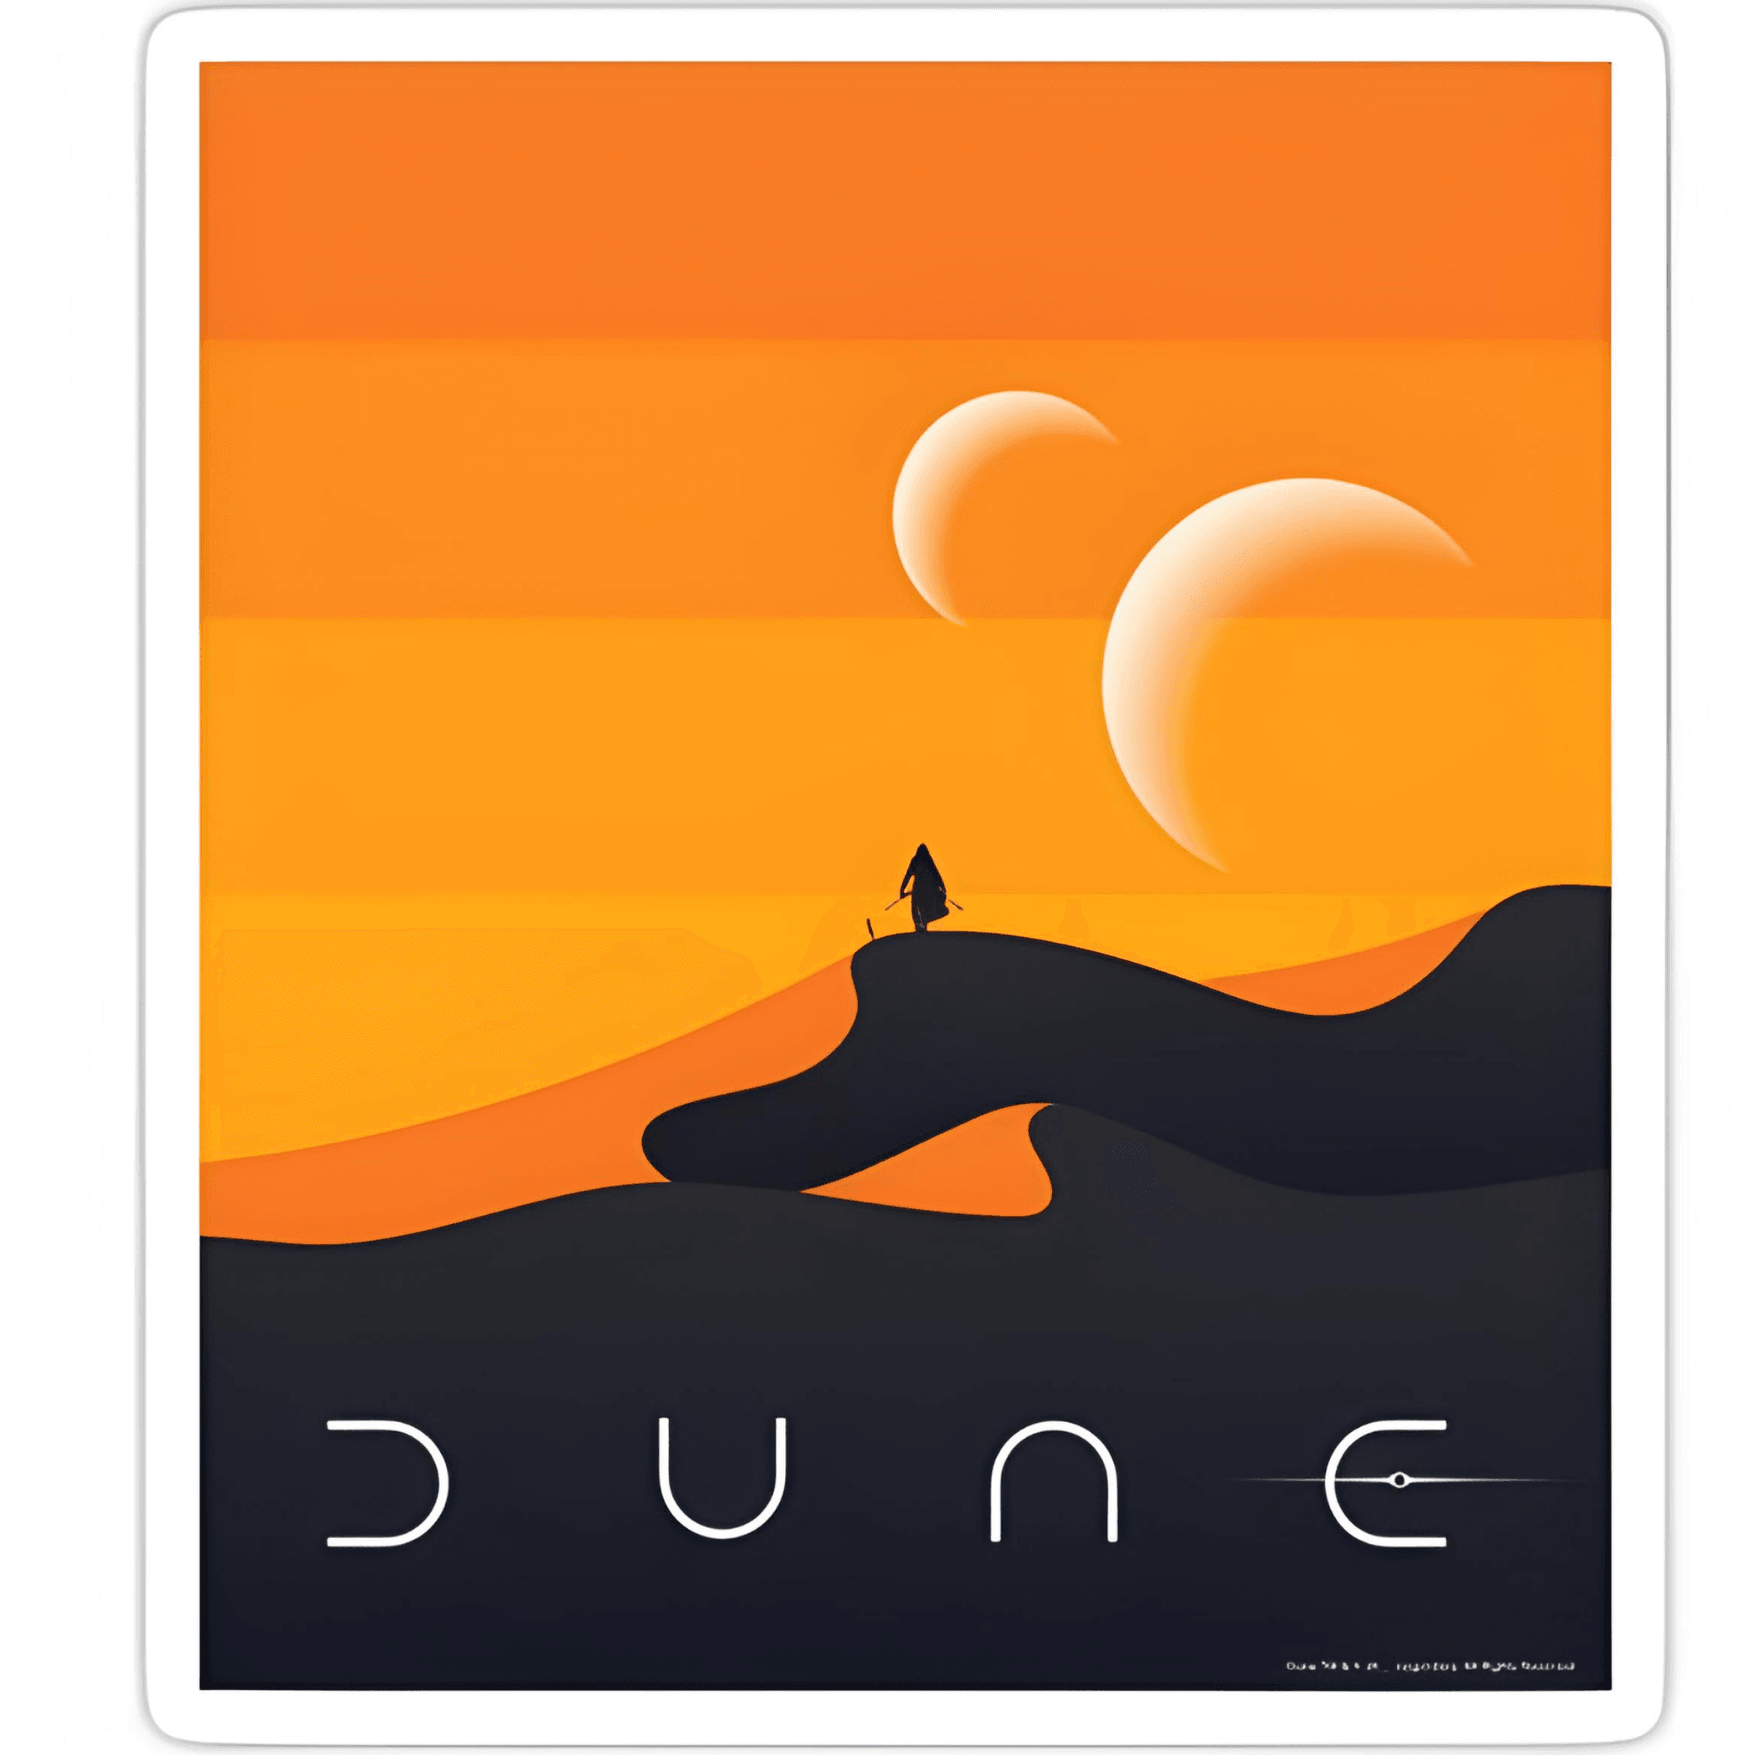 Dune sticker 6cm